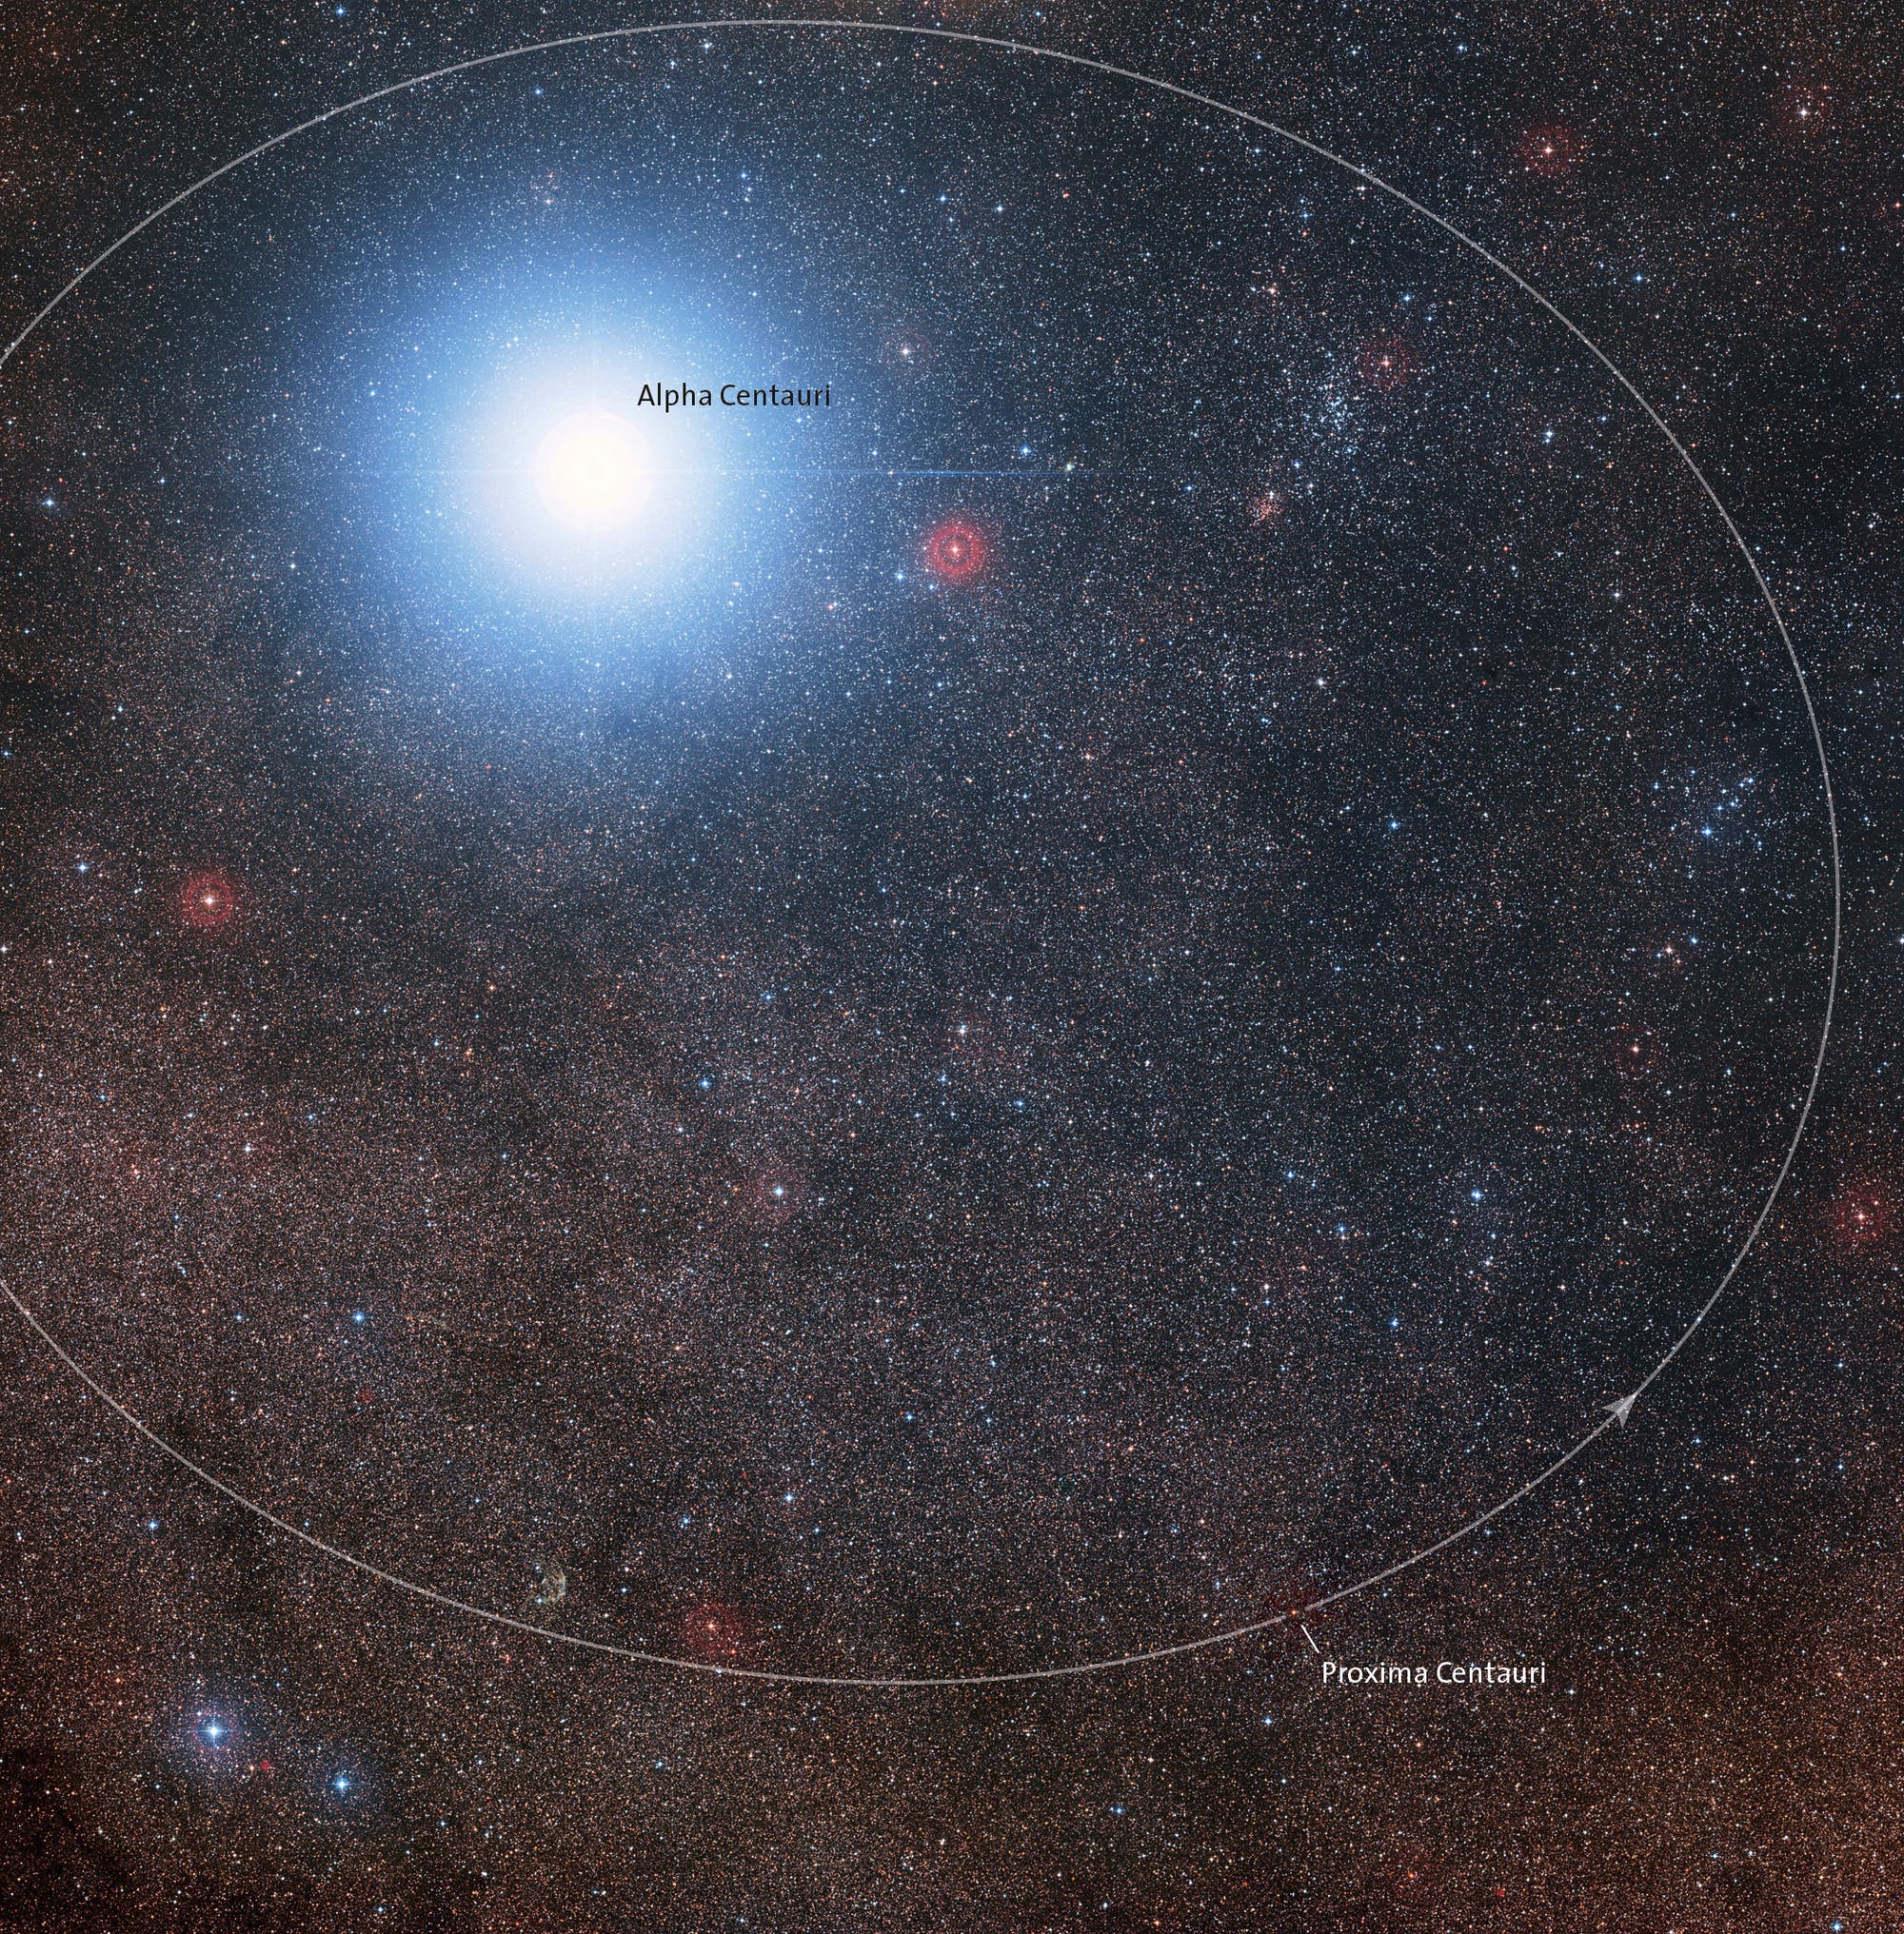 Der Doppelstern Alpha Centauri wird von Proxima Centauri auf einer eliptischen Bahn umkreist.